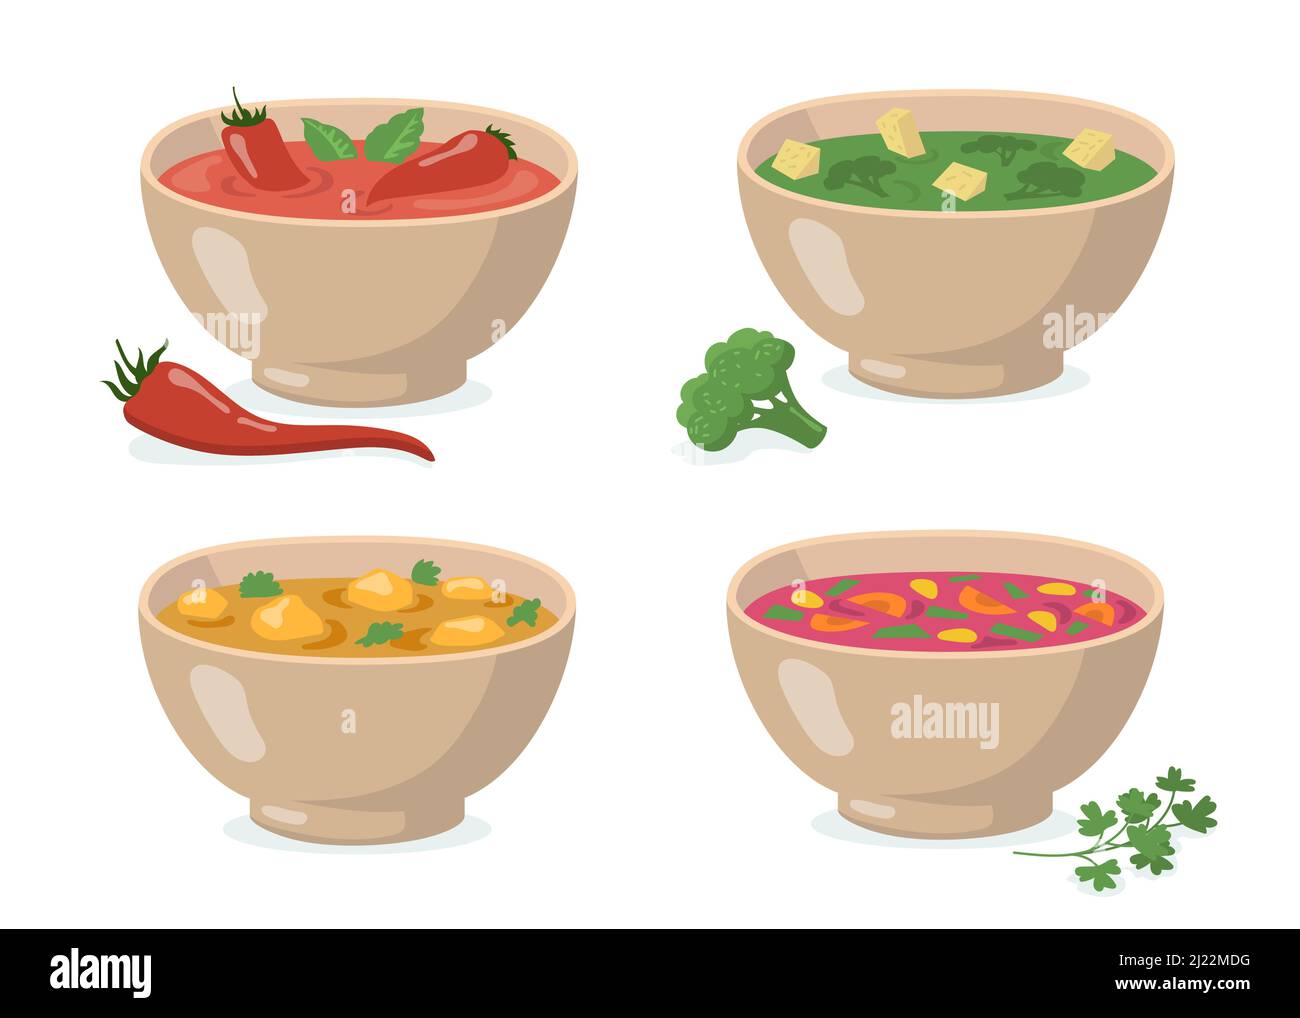 Ensemble de bols de soupes. Gazpacho de tomates au piment rouge, purée verte de brocoli, curry aux champignons, borscht traditionnel. Pour la cuisson des légumes, crea Illustration de Vecteur